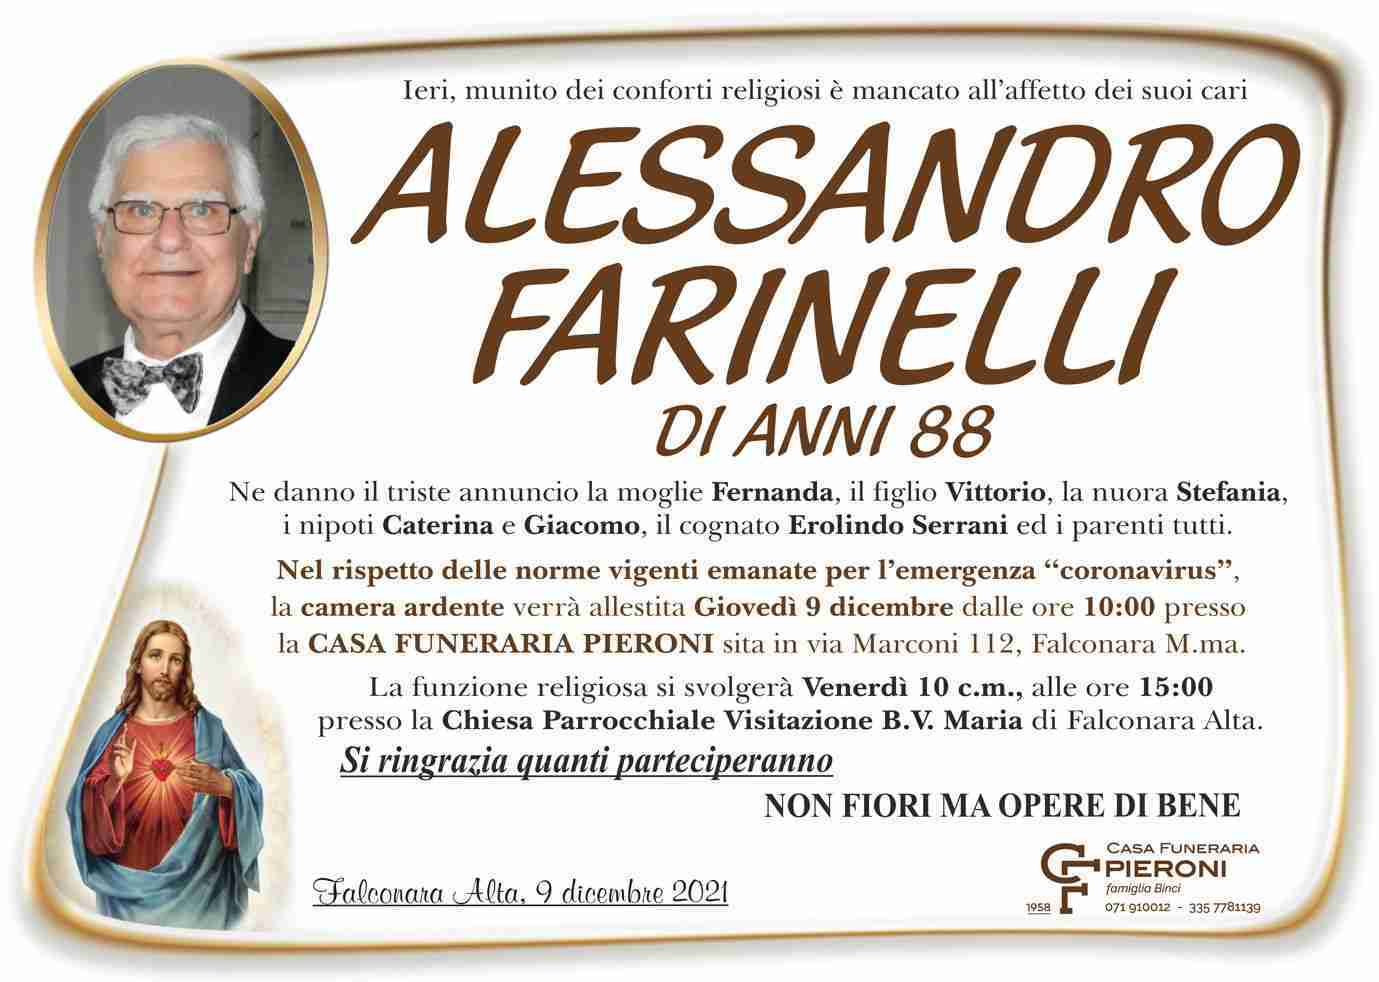 Alessandro Farinelli